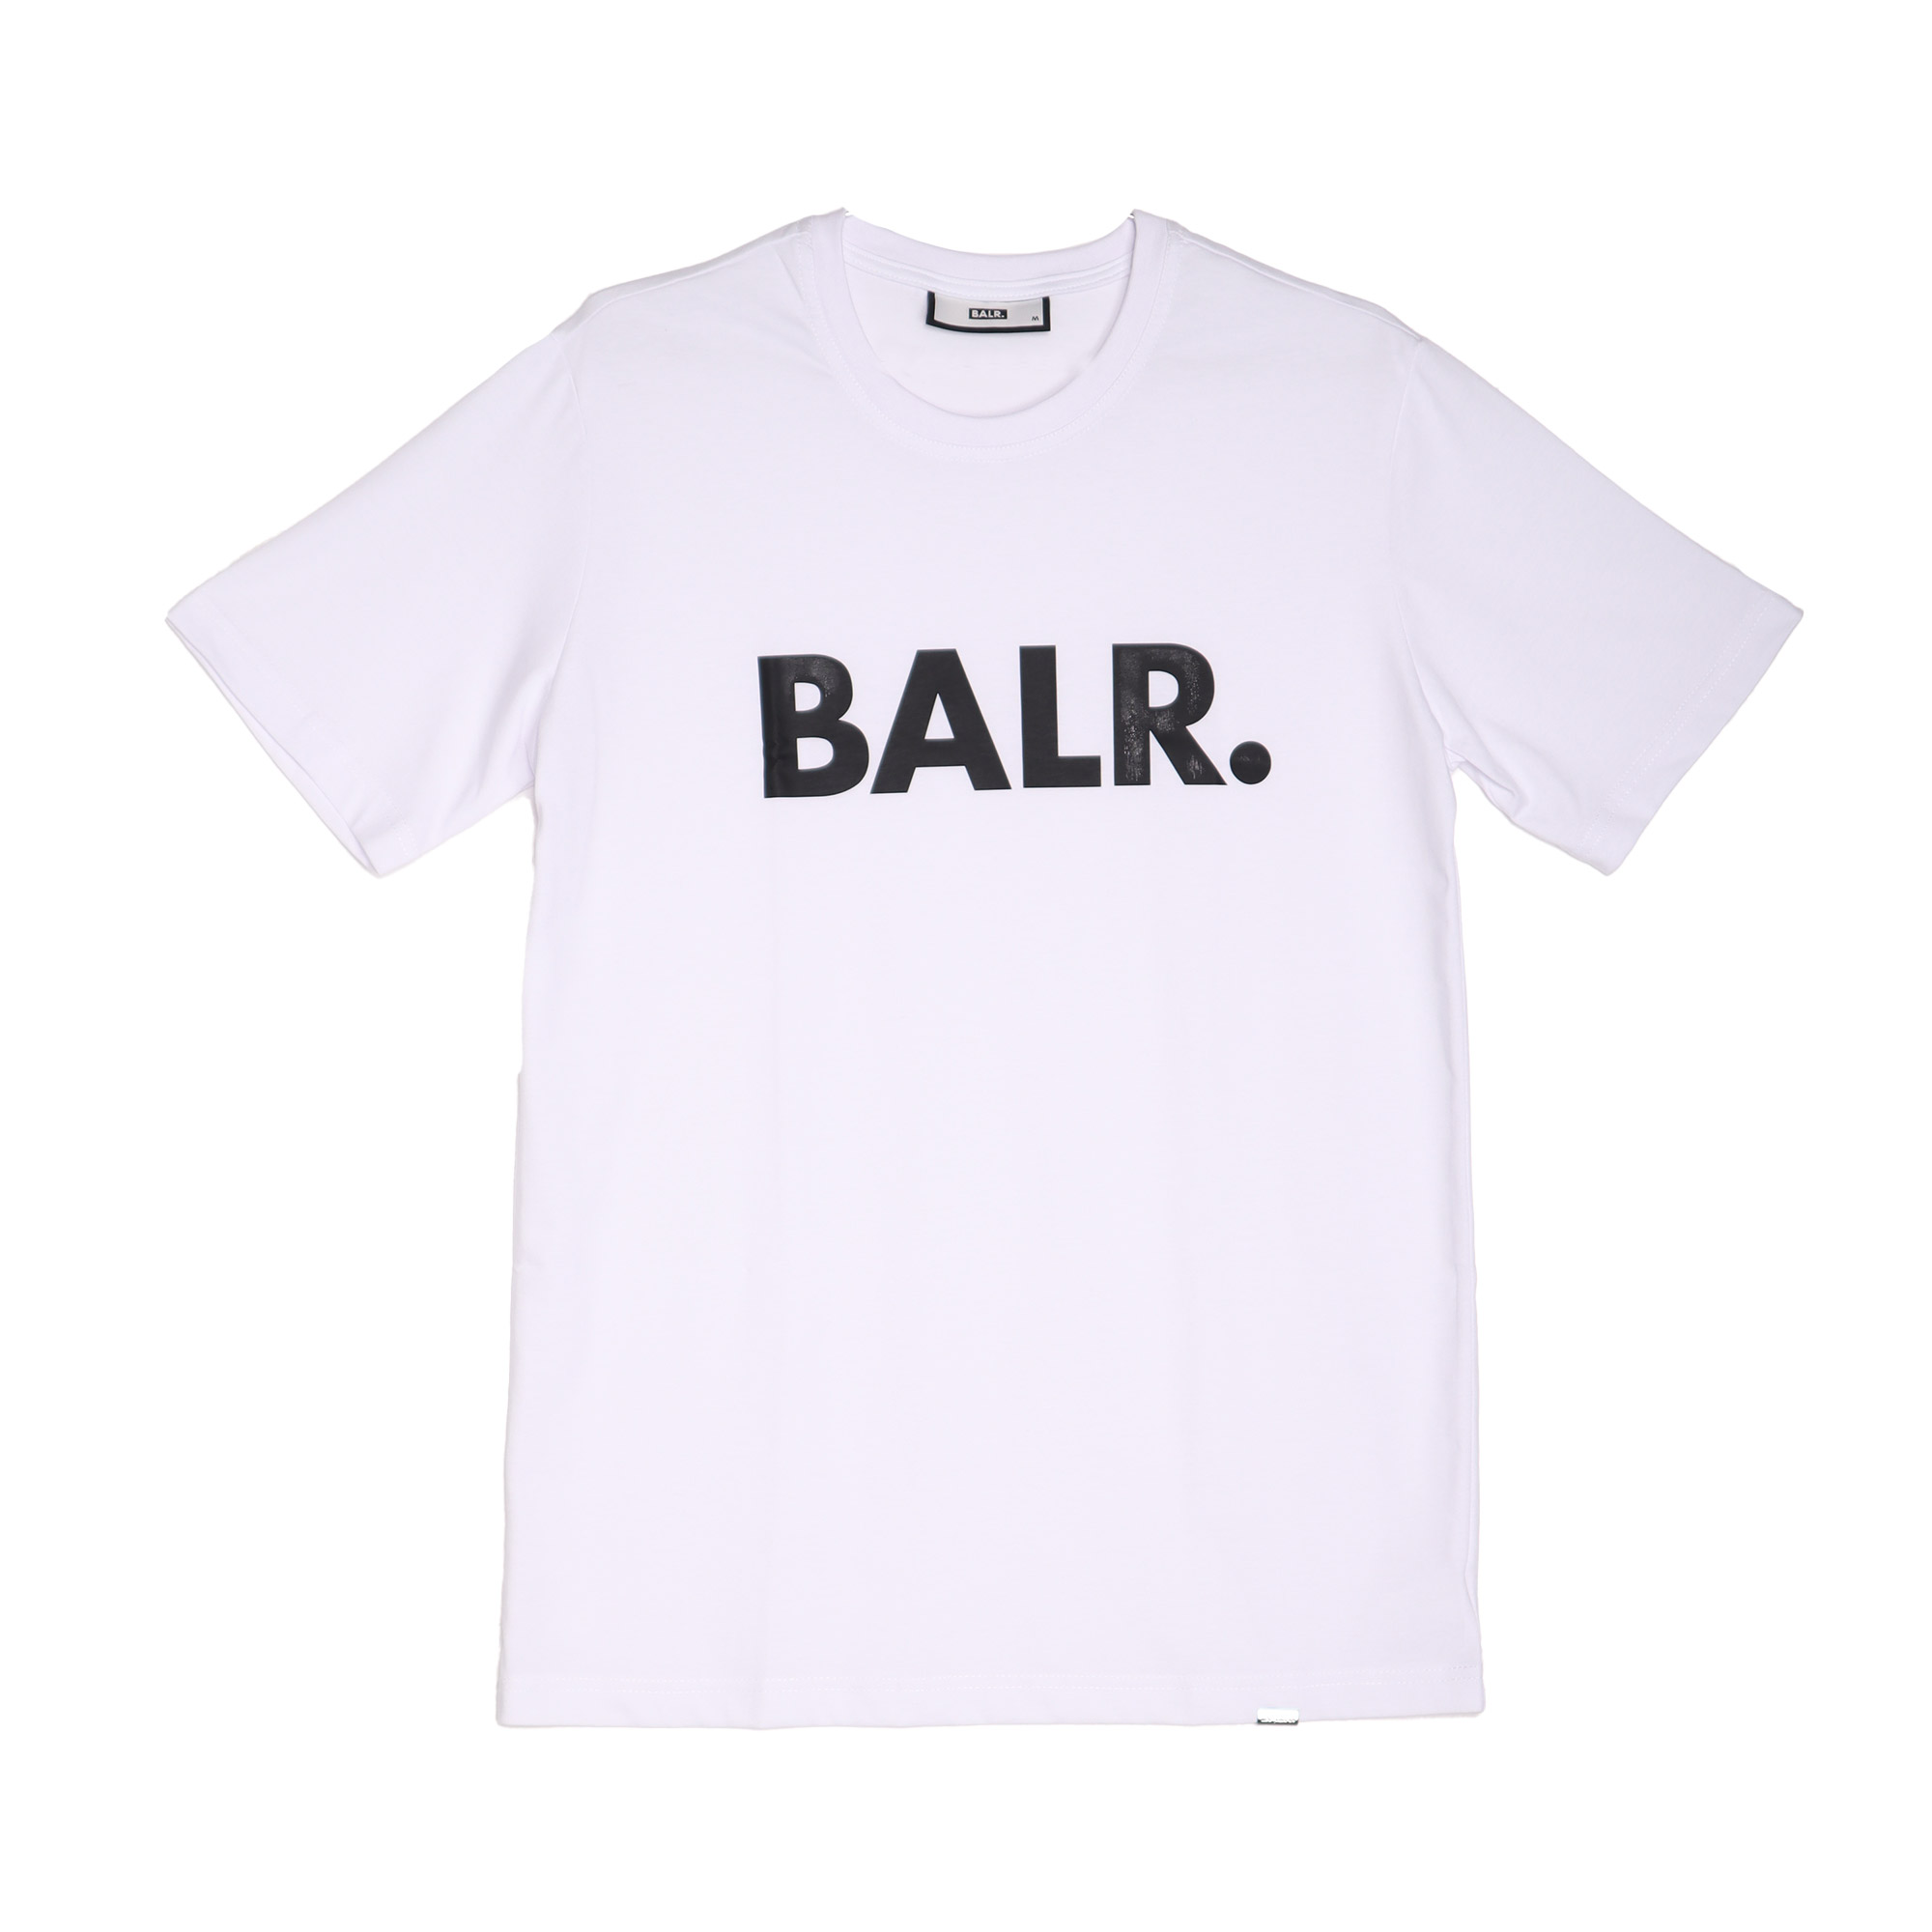 送料無料 ボーラー 半袖Tシャツ メンズ BRAND STRAIGHT T-SHIRT BALR. B1112.1048 ネイビー 紺 ウエア  トップス ロゴ